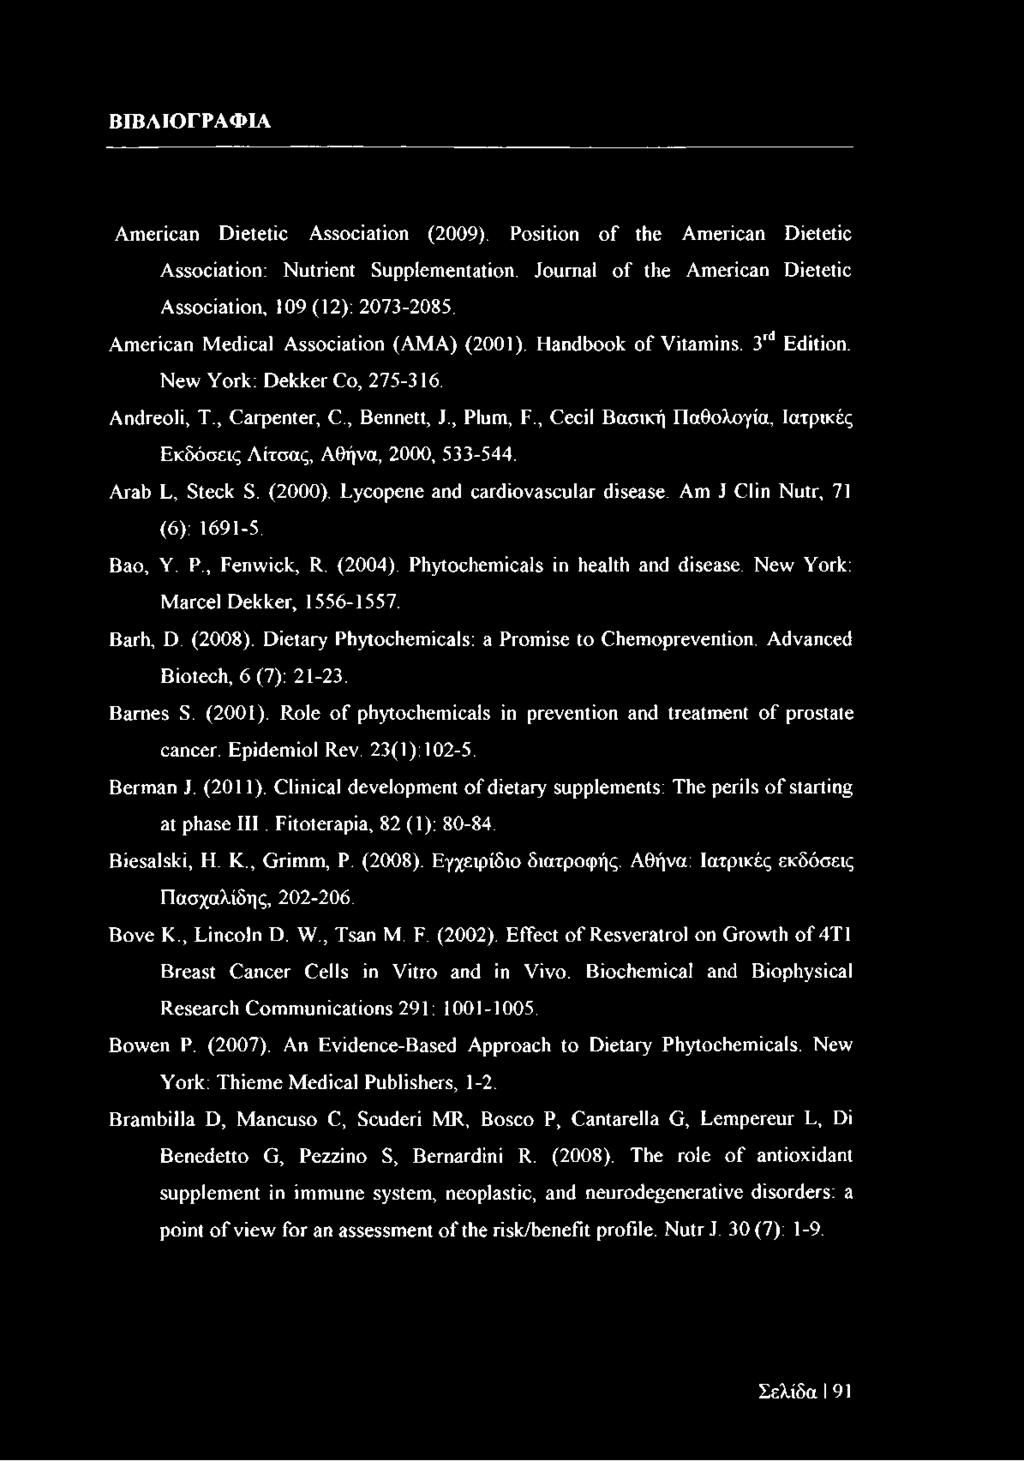 , Cecil Βασική Παθολογία, Ιατρικές Εκδόσεις Λίτσας, Αθήνα, 2000, 533-544. Arab L, Steck S. (2000). Lycopene and cardiovascular disease. Am J Clin Nutr, 71 (6): 1691-5. Bao, Y. P., Fenwick, R. (2004).